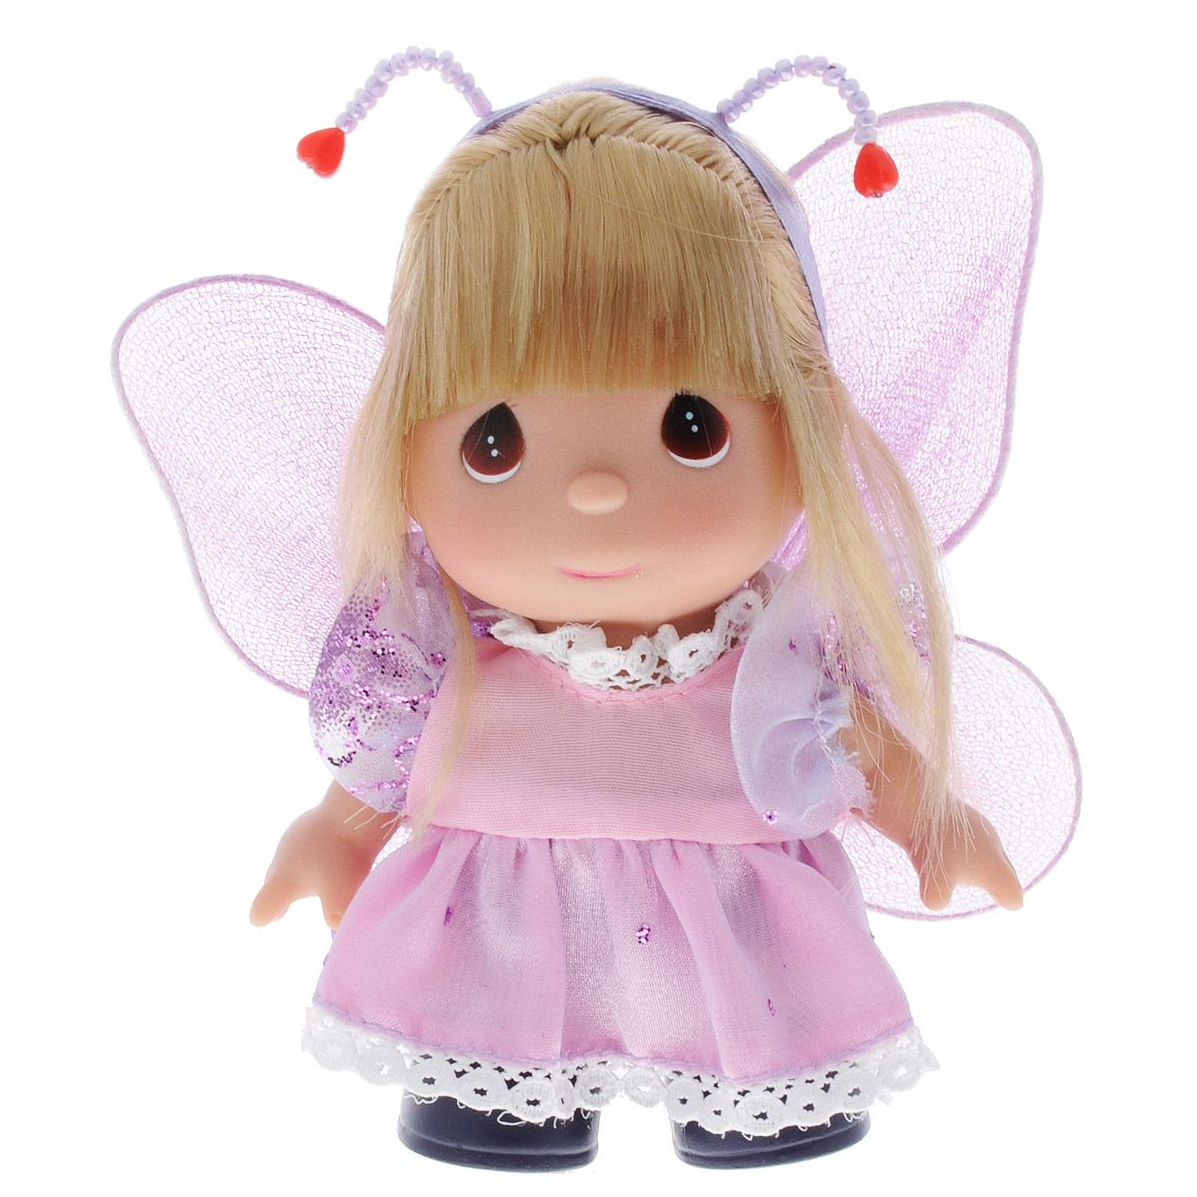 Мини-кукла Бабочка цвет наряда розовый сиреневый